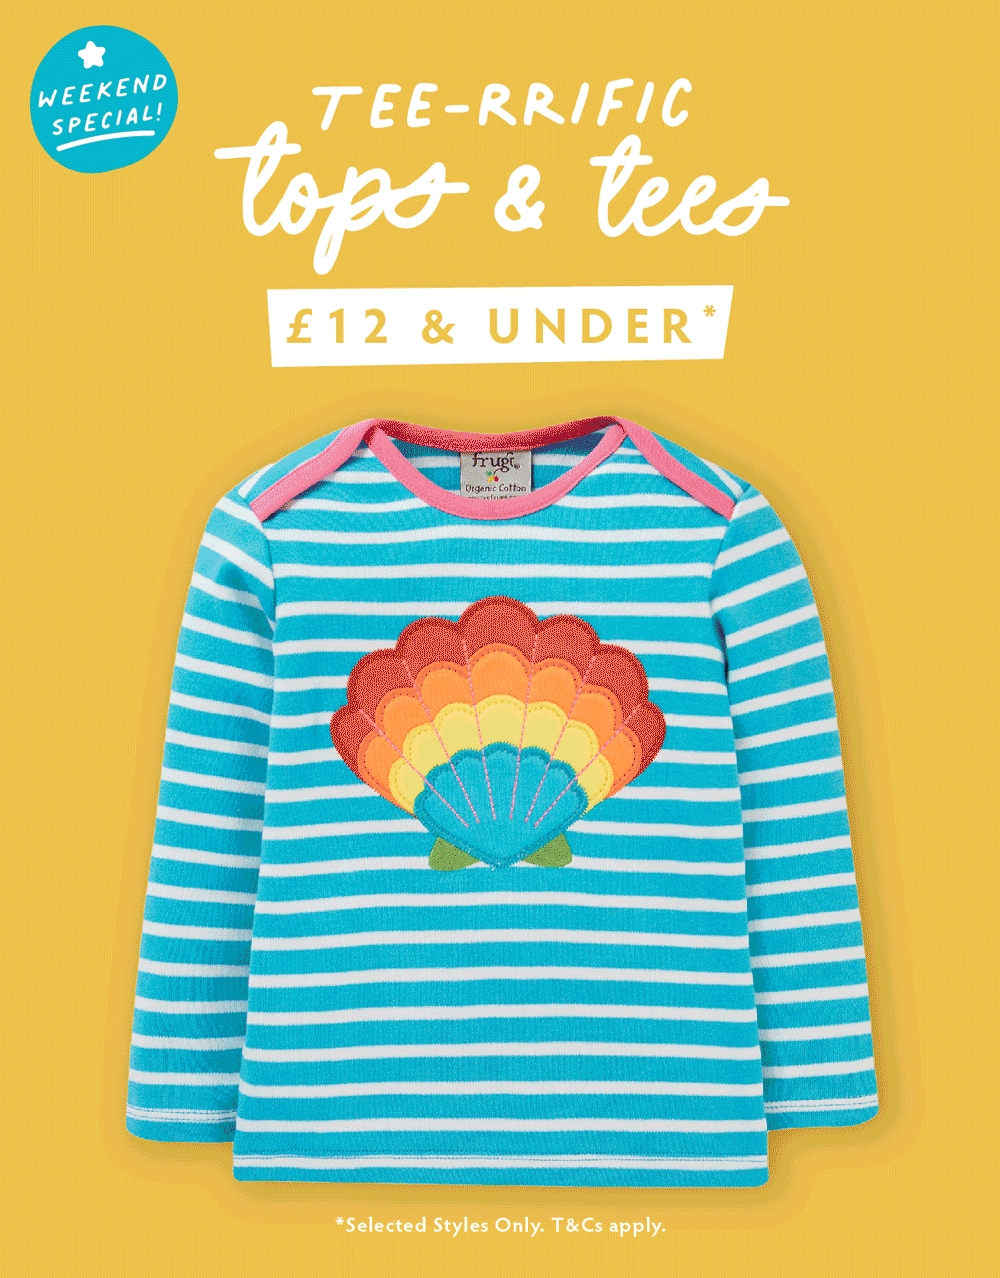 Tee-rrific tops & tees. 12 & under*